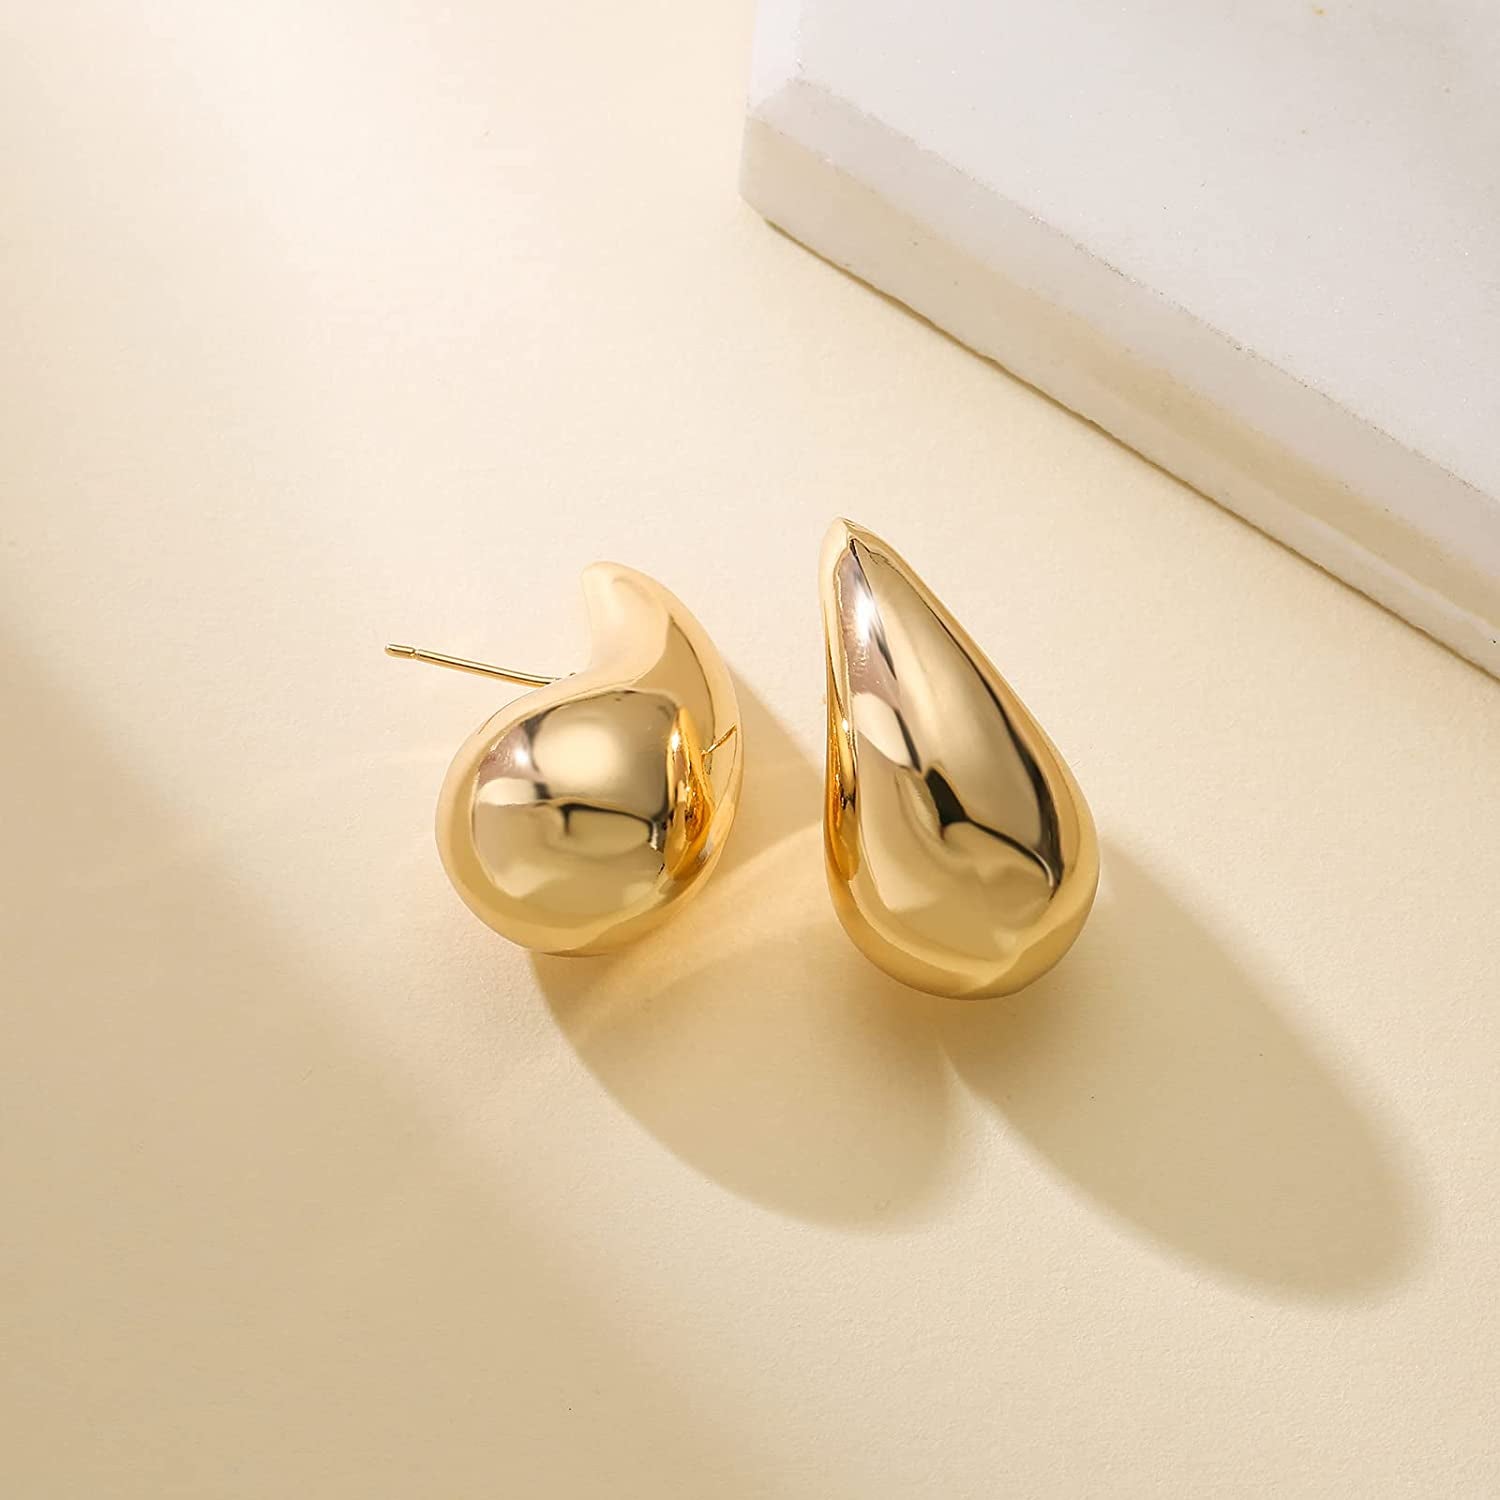 Chunky Gold Hoop Earrings for Women, Lightweight Waterdrop Hollow Open Hoops, Hypoallergenic Gold Plated Earrings Fashion Jewelry for Women Girls